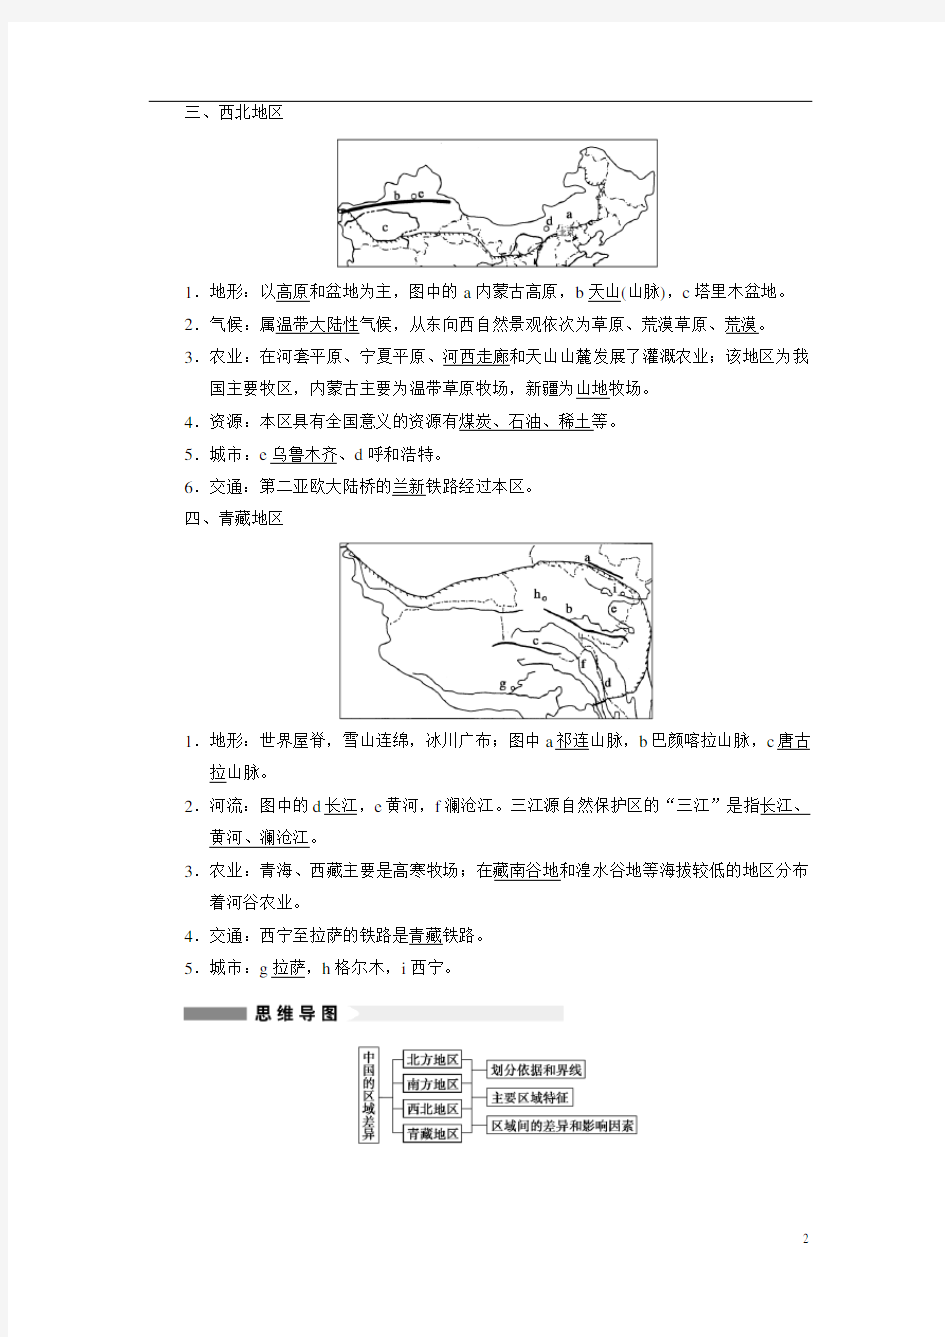 中国区域地理复习讲义(教师版)资料